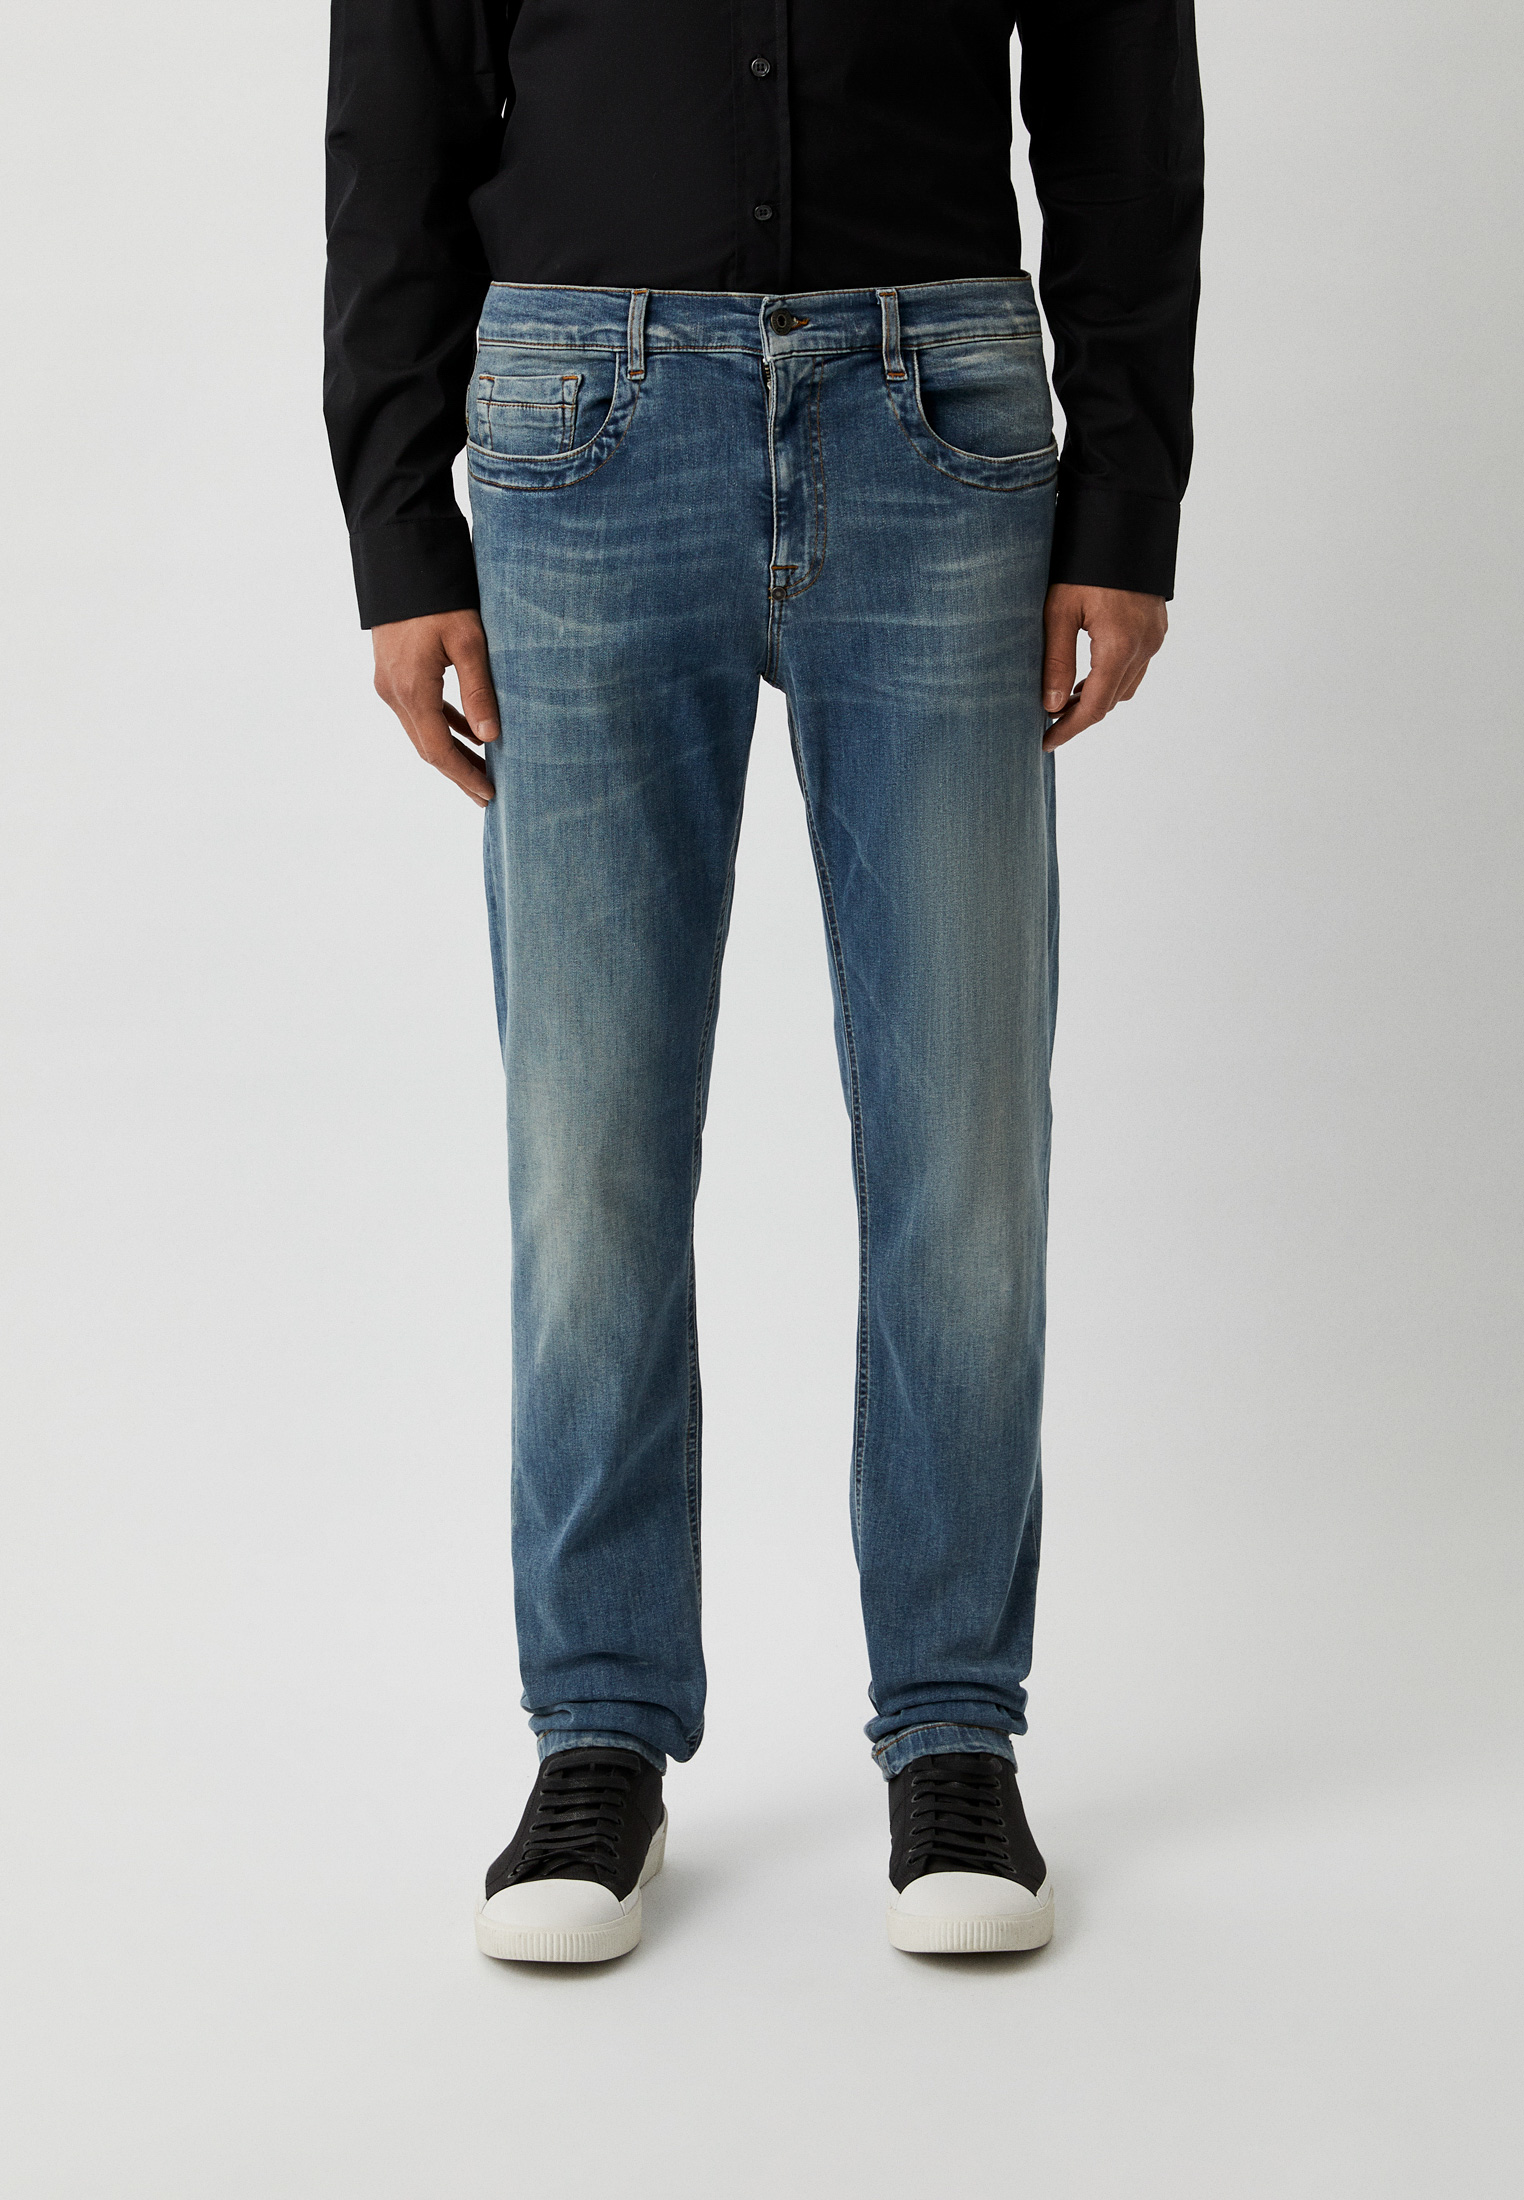 Мужские зауженные джинсы Bikkembergs (Биккембергс) C Q 101 1C S 3511: изображение 5